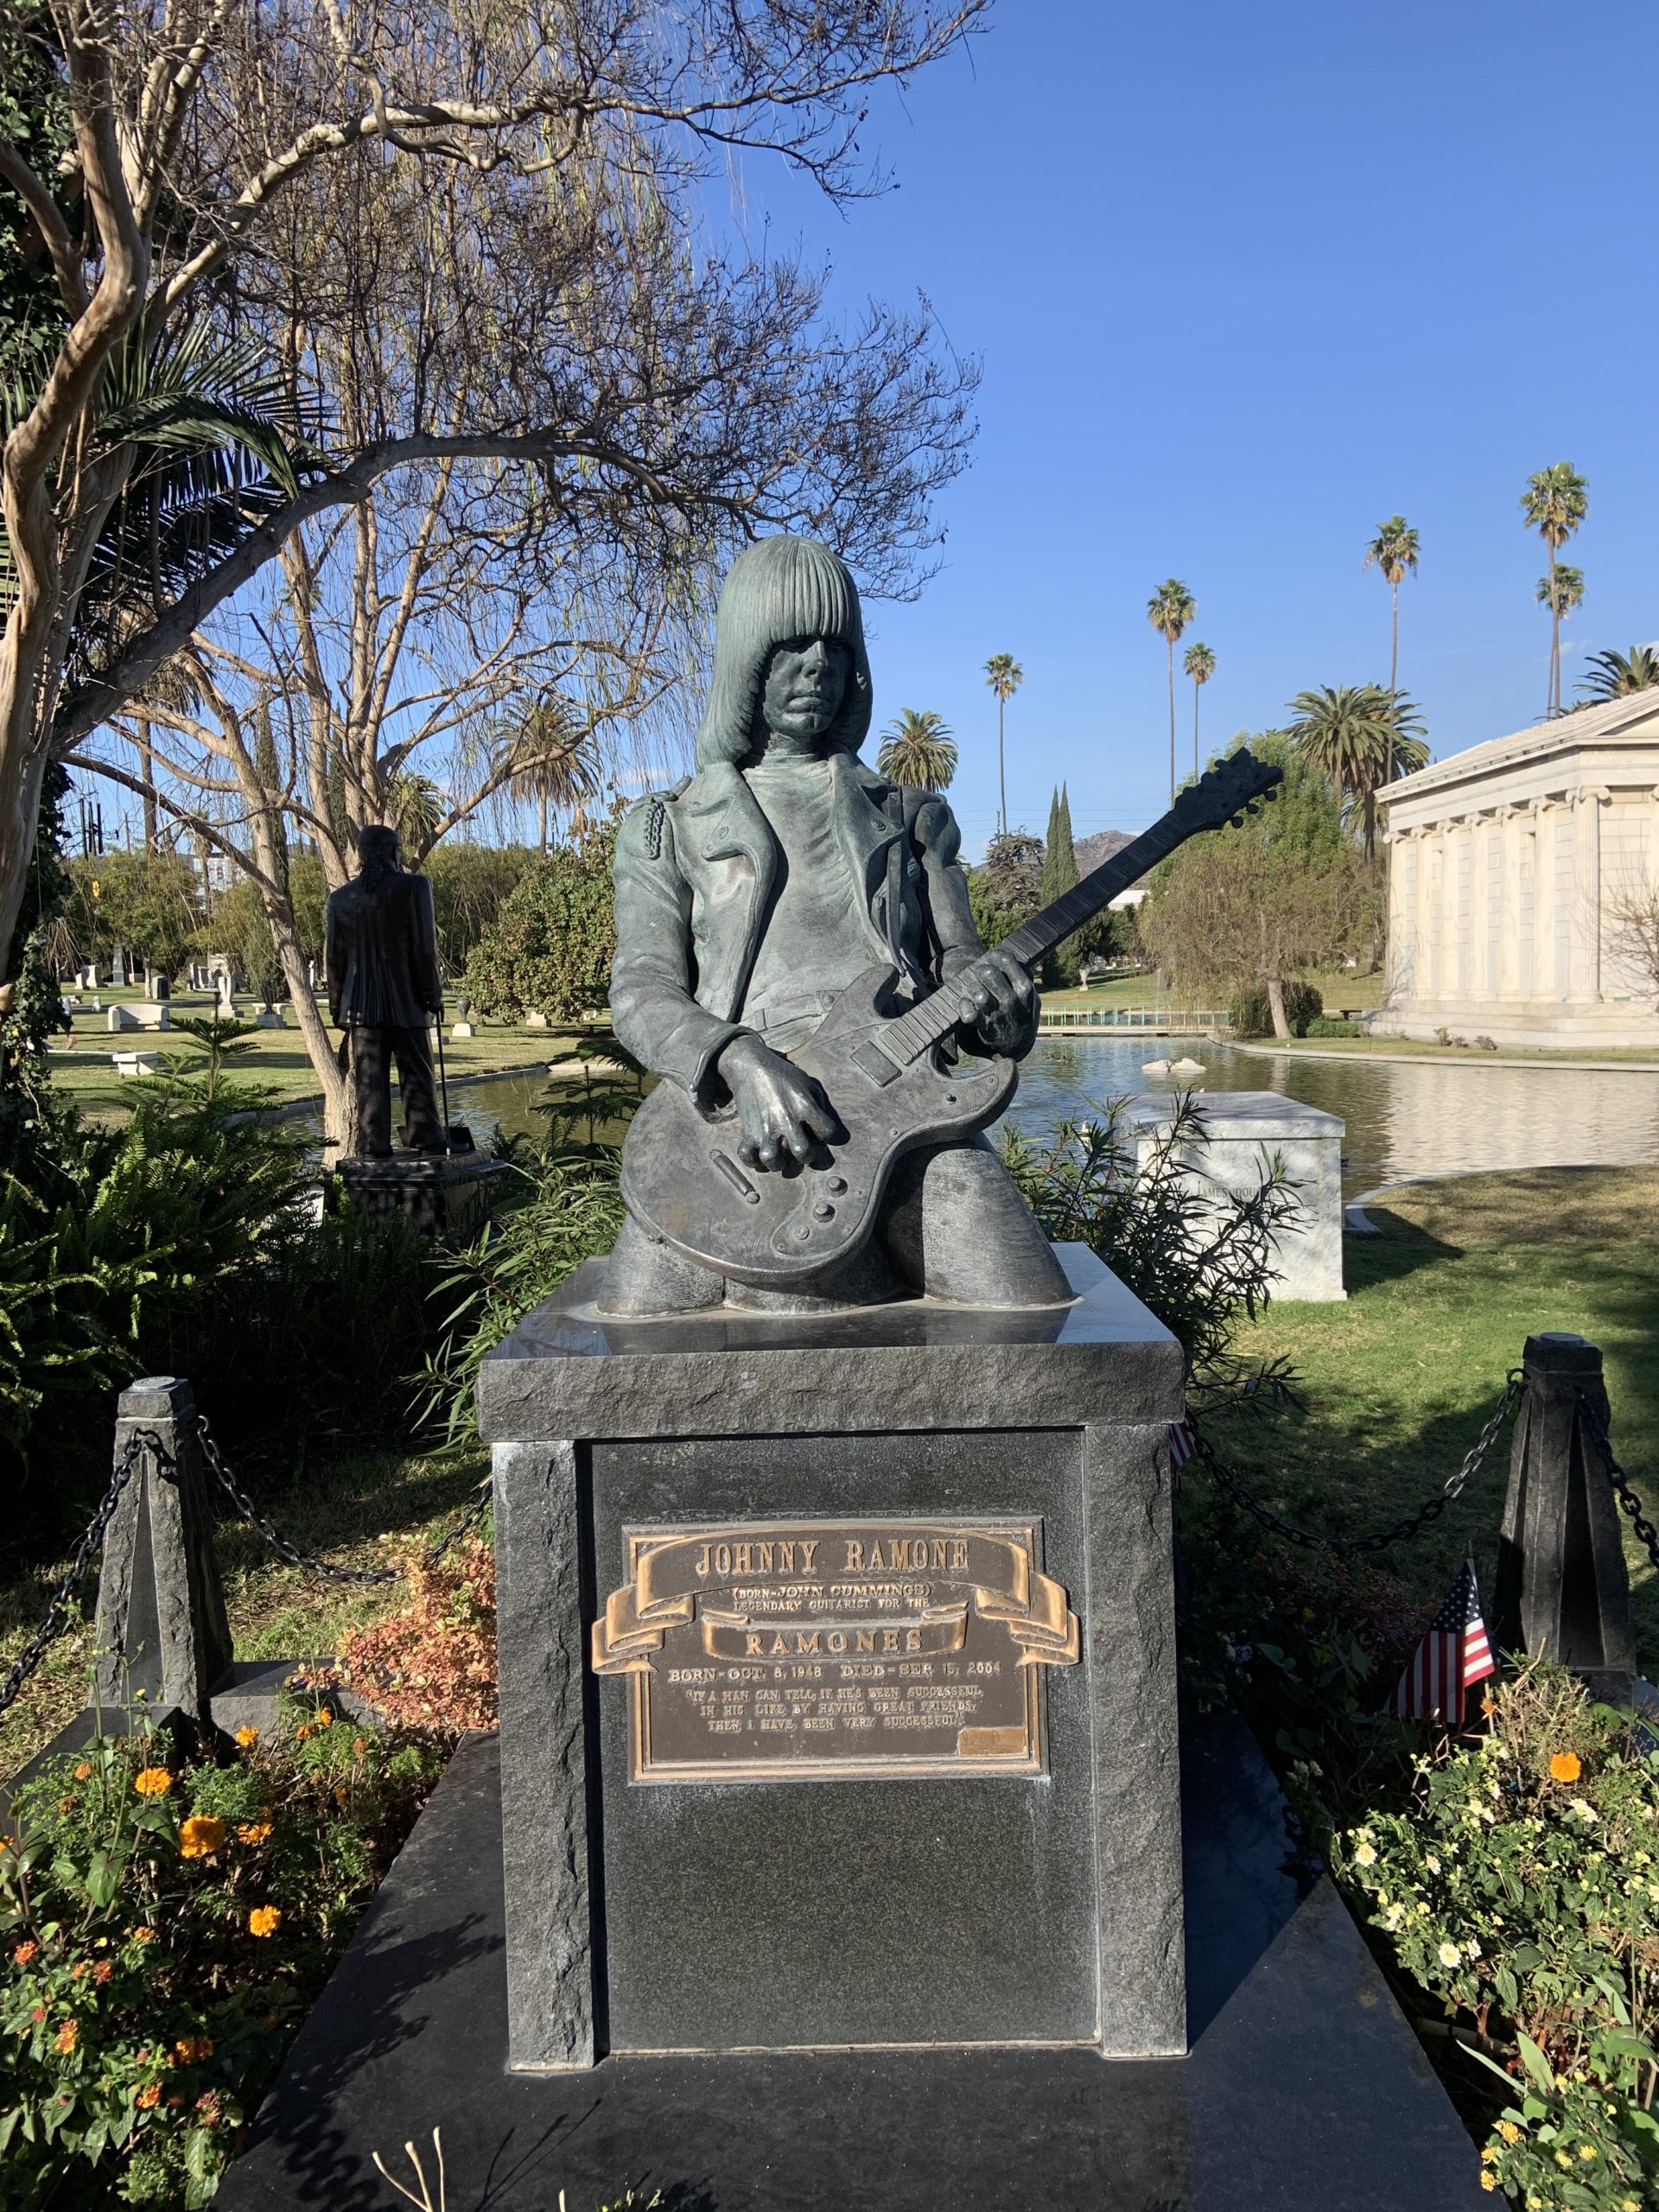 Johnny Ramone Grave